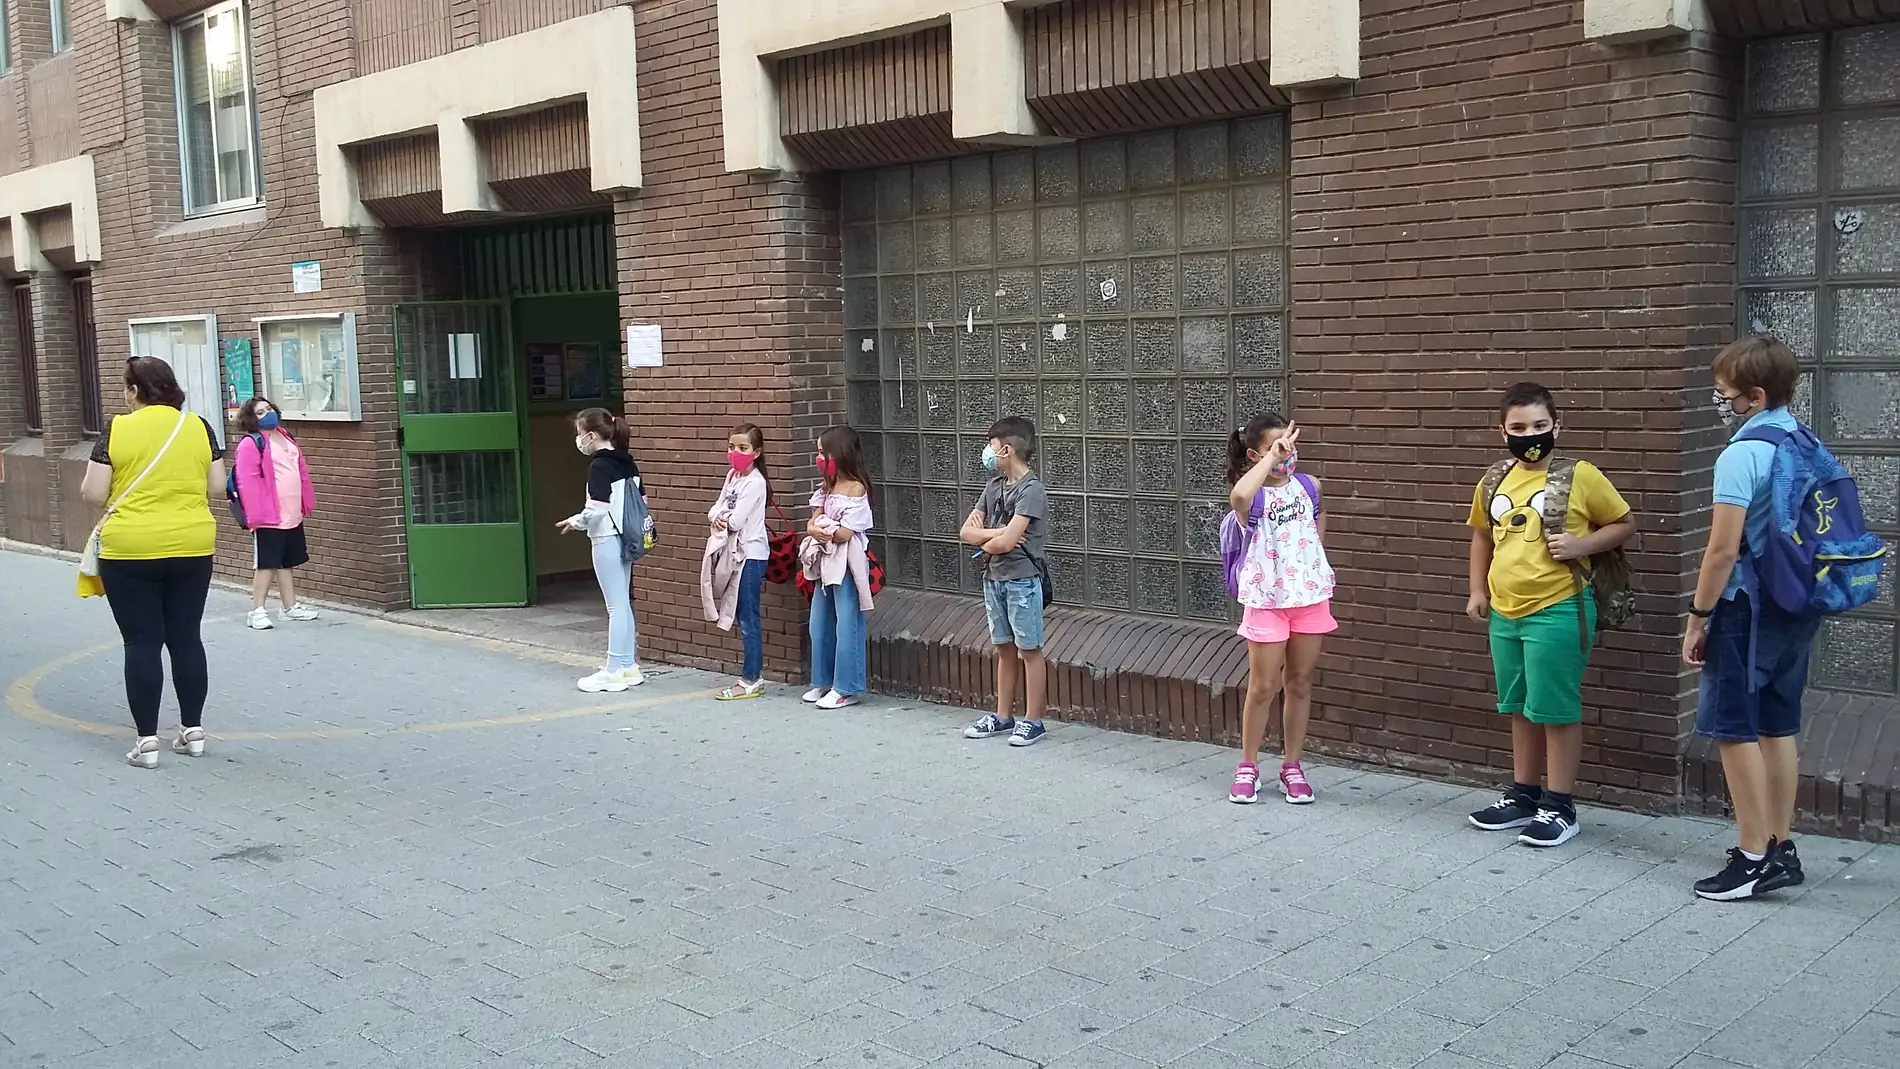 Alumnos en fila y con mascarillas antes de entrar en el colegio